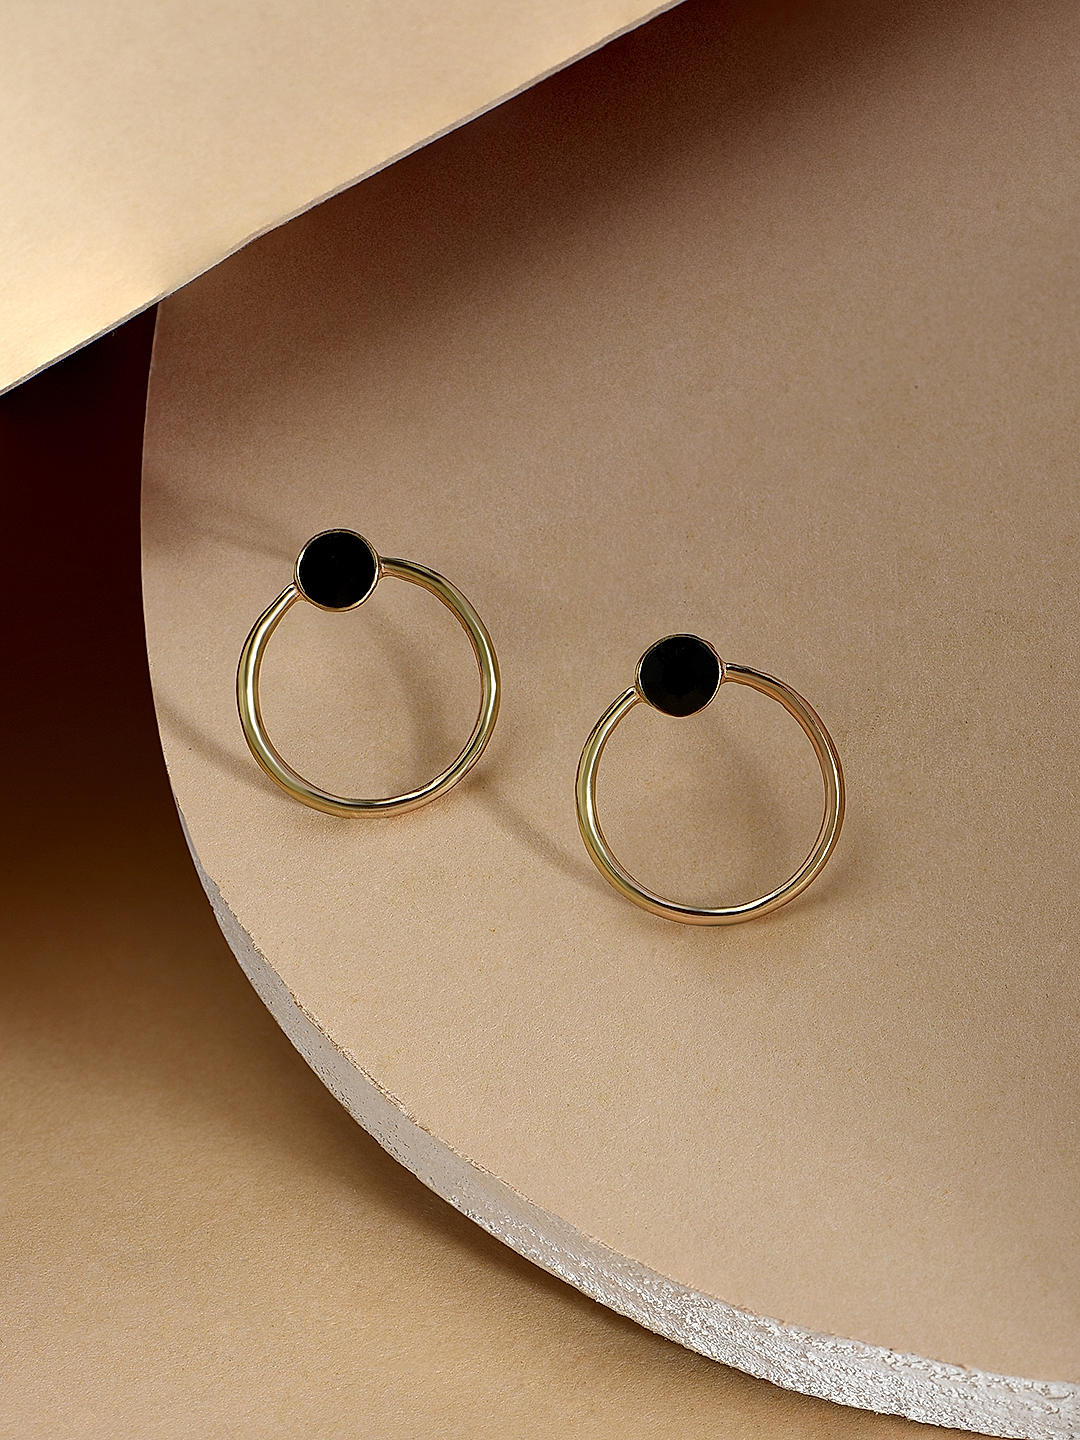 Buy Small Gold Hoop Earrings for Women - 16mm Hoop Earrings - Gold Hoops ( Gold) at Amazon.in